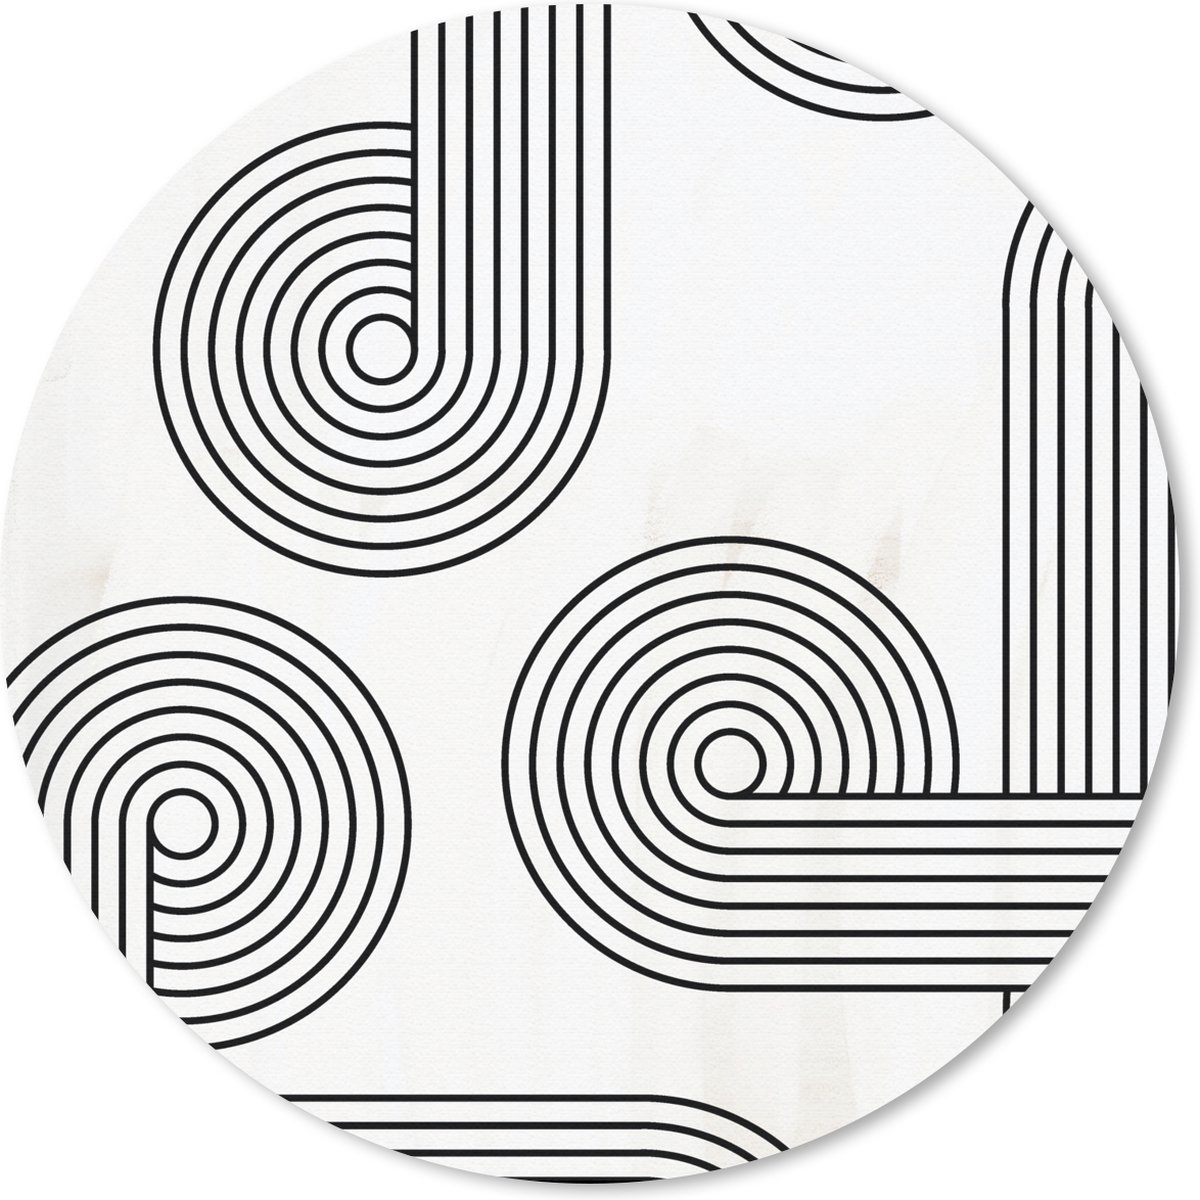 Muismat - Mousepad - Rond - Kunst - Abstract - Cirkel - 50x50 cm - Ronde muismat